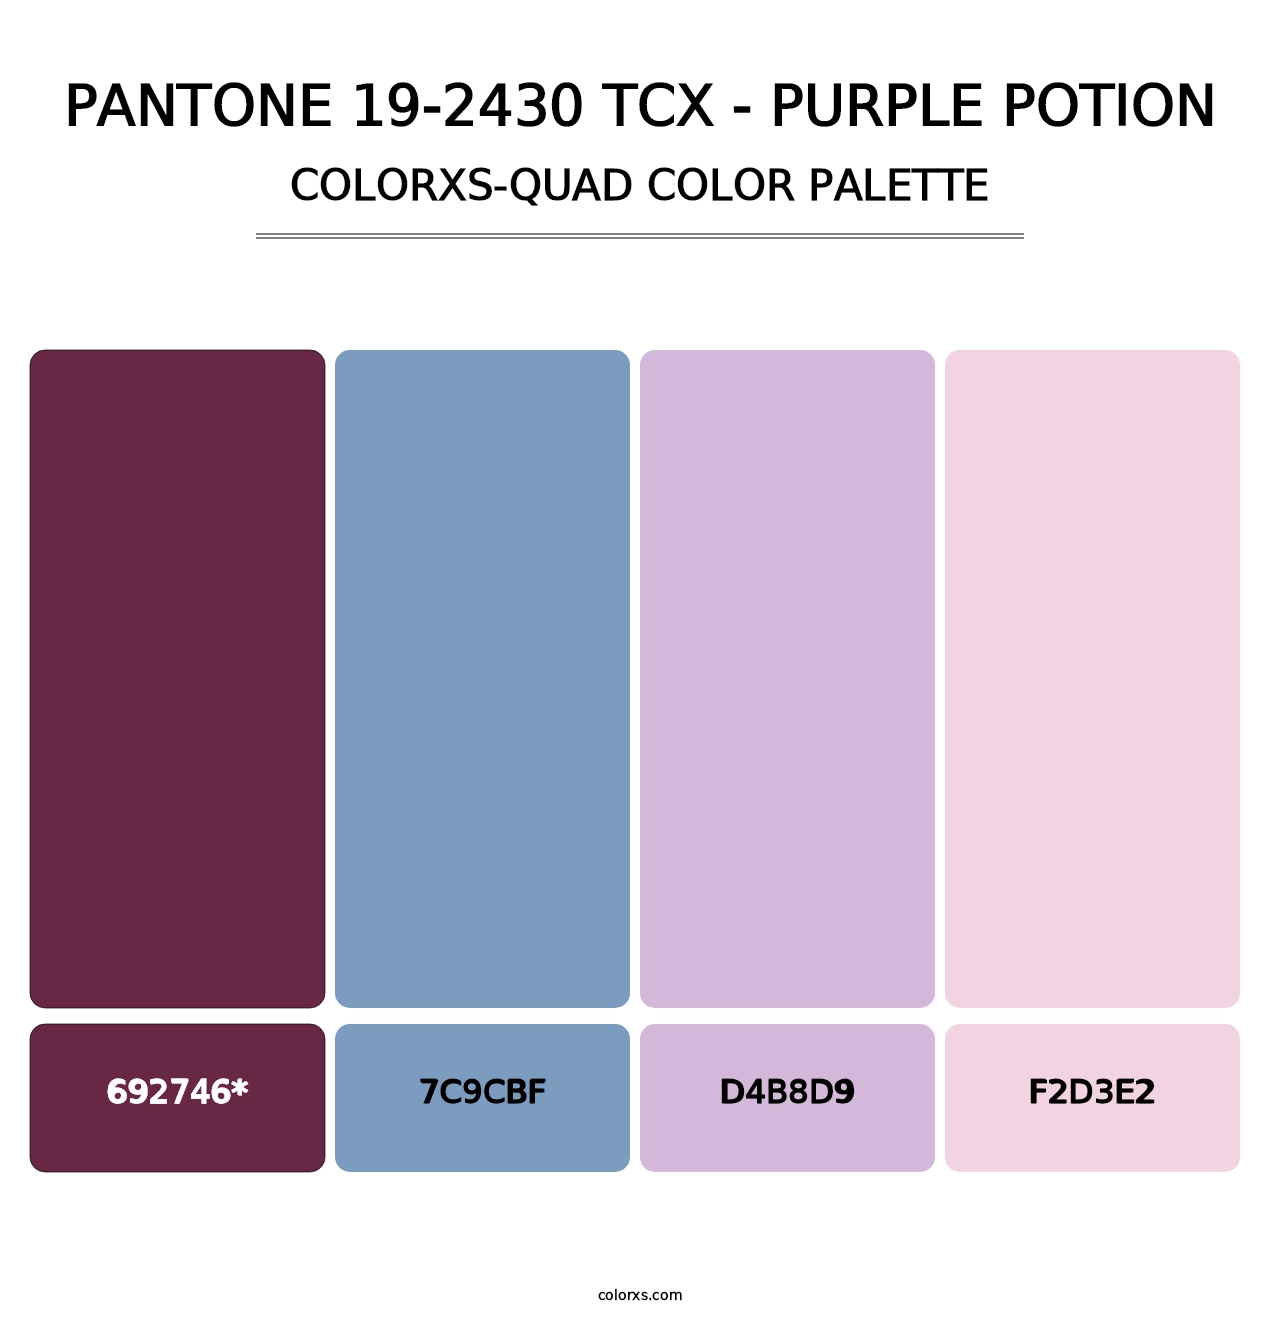 PANTONE 19-2430 TCX - Purple Potion - Colorxs Quad Palette